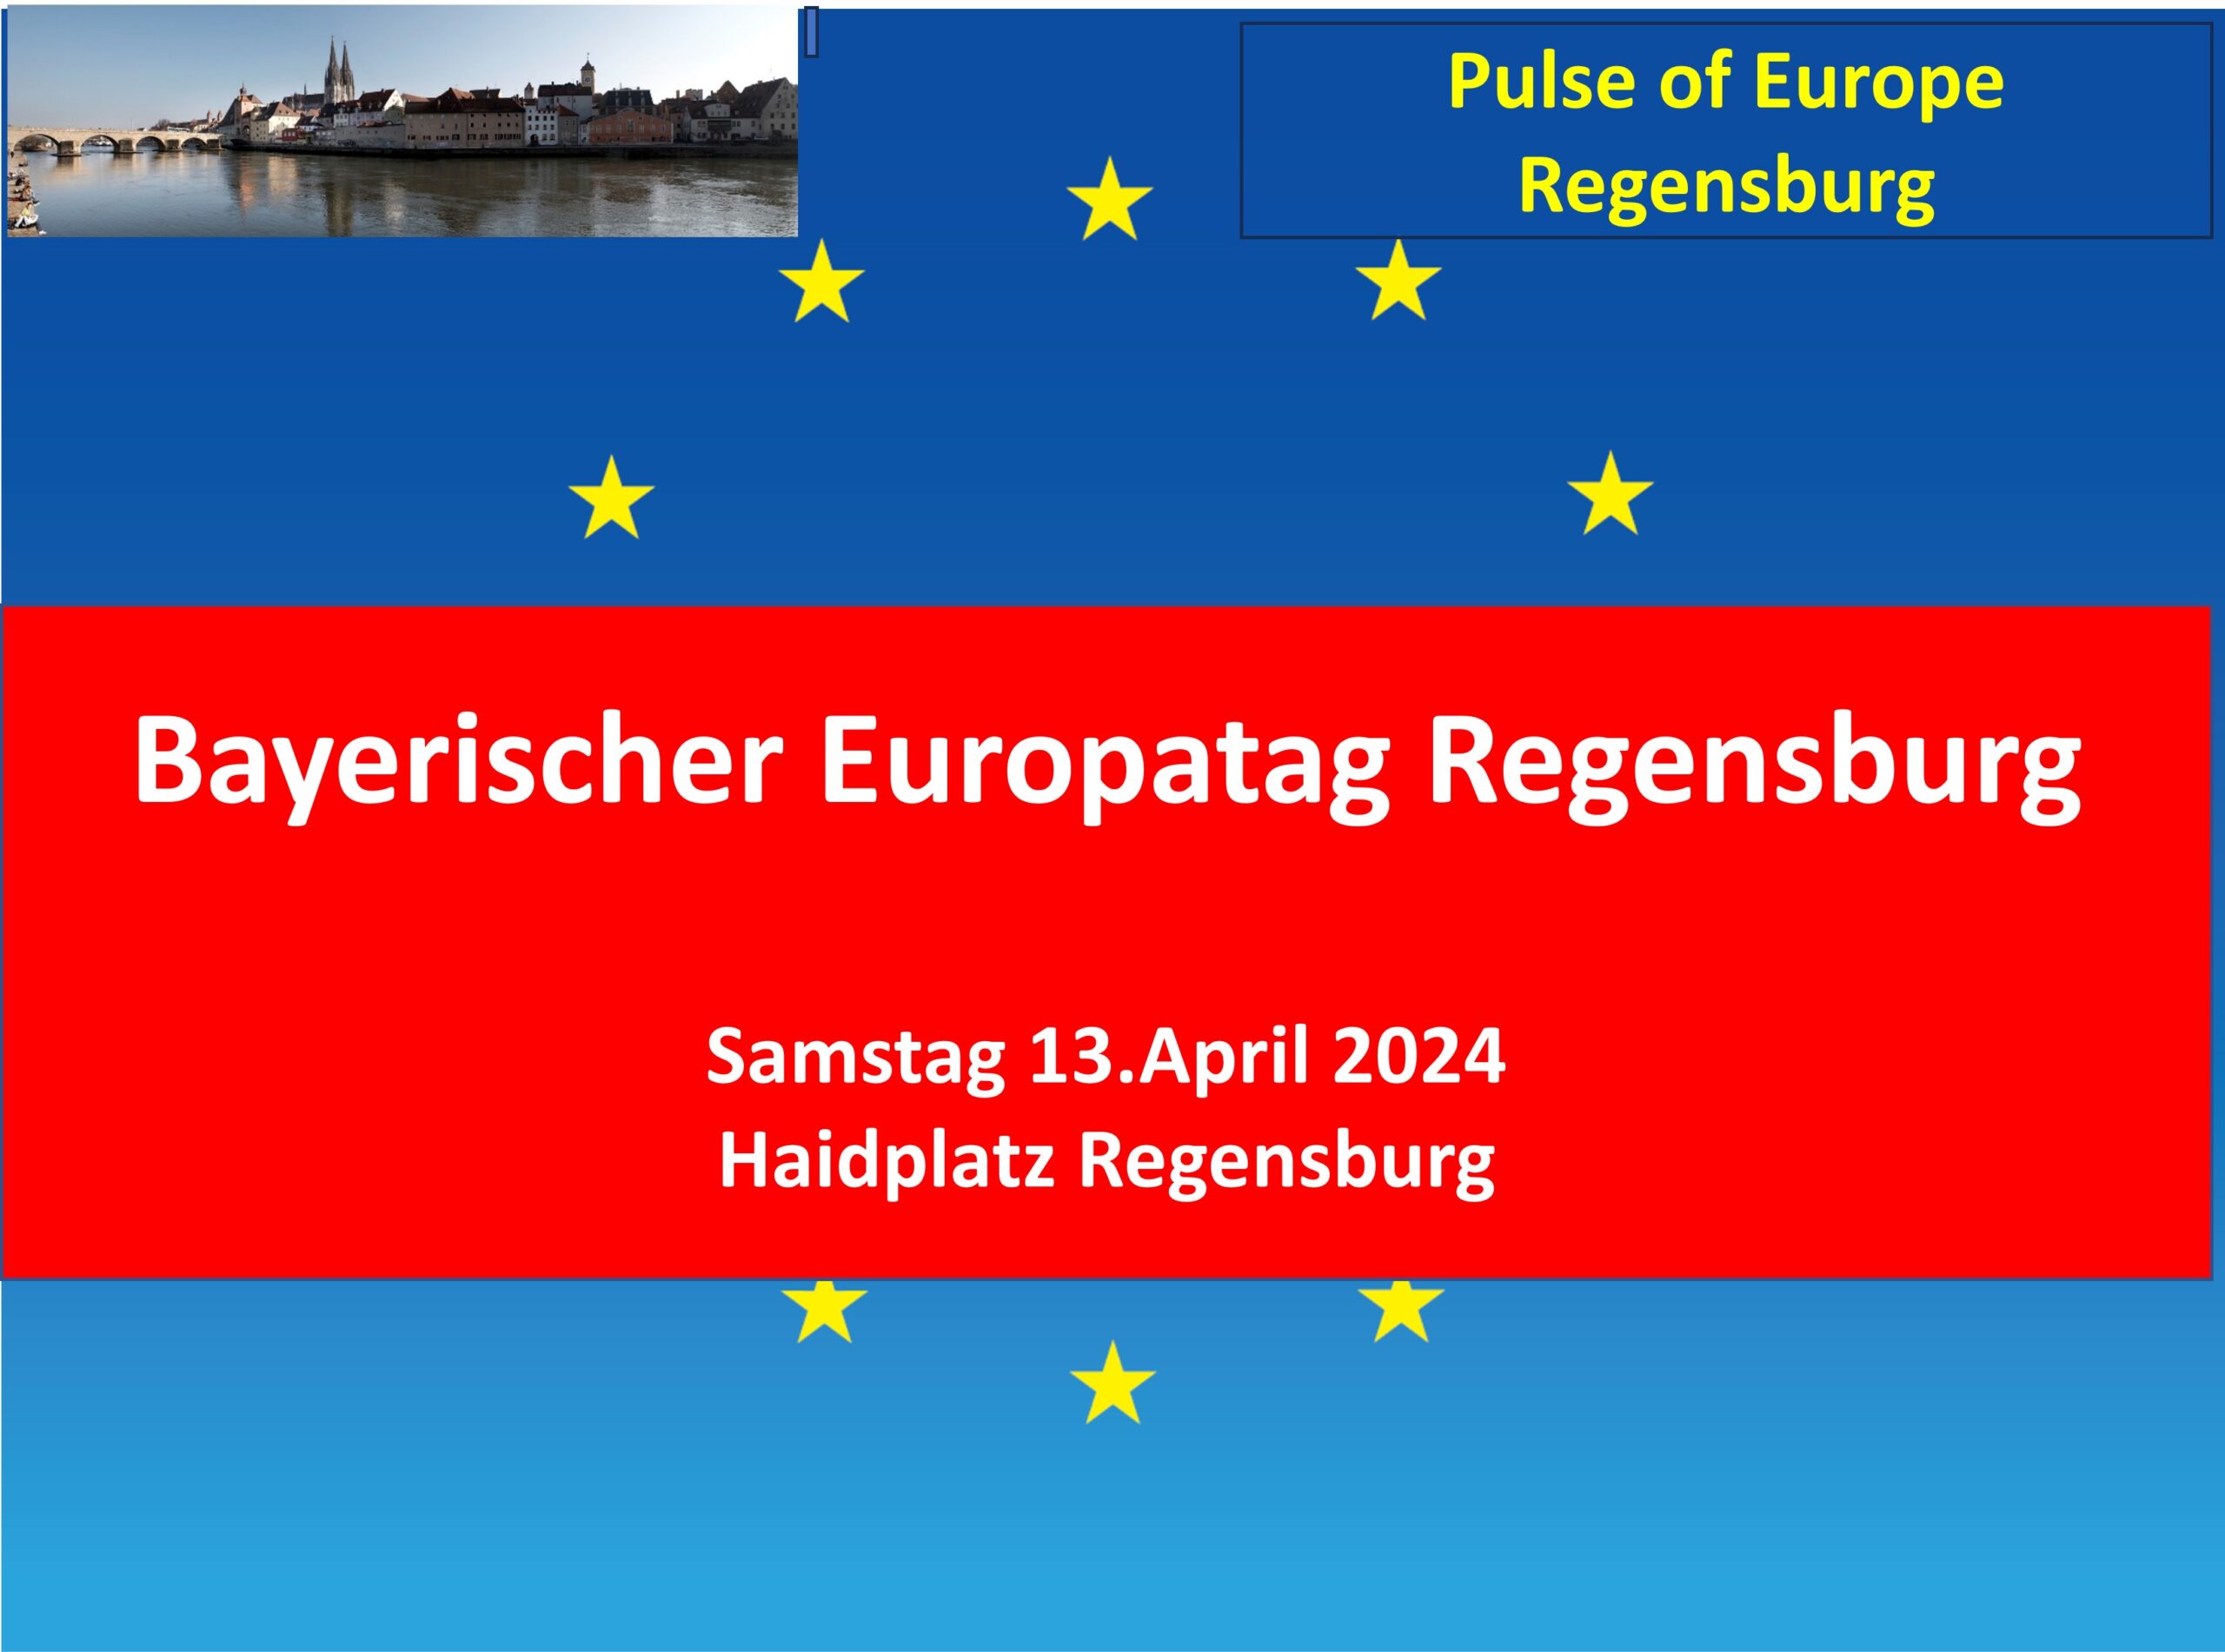 Bayerischer Europatag Regensburg